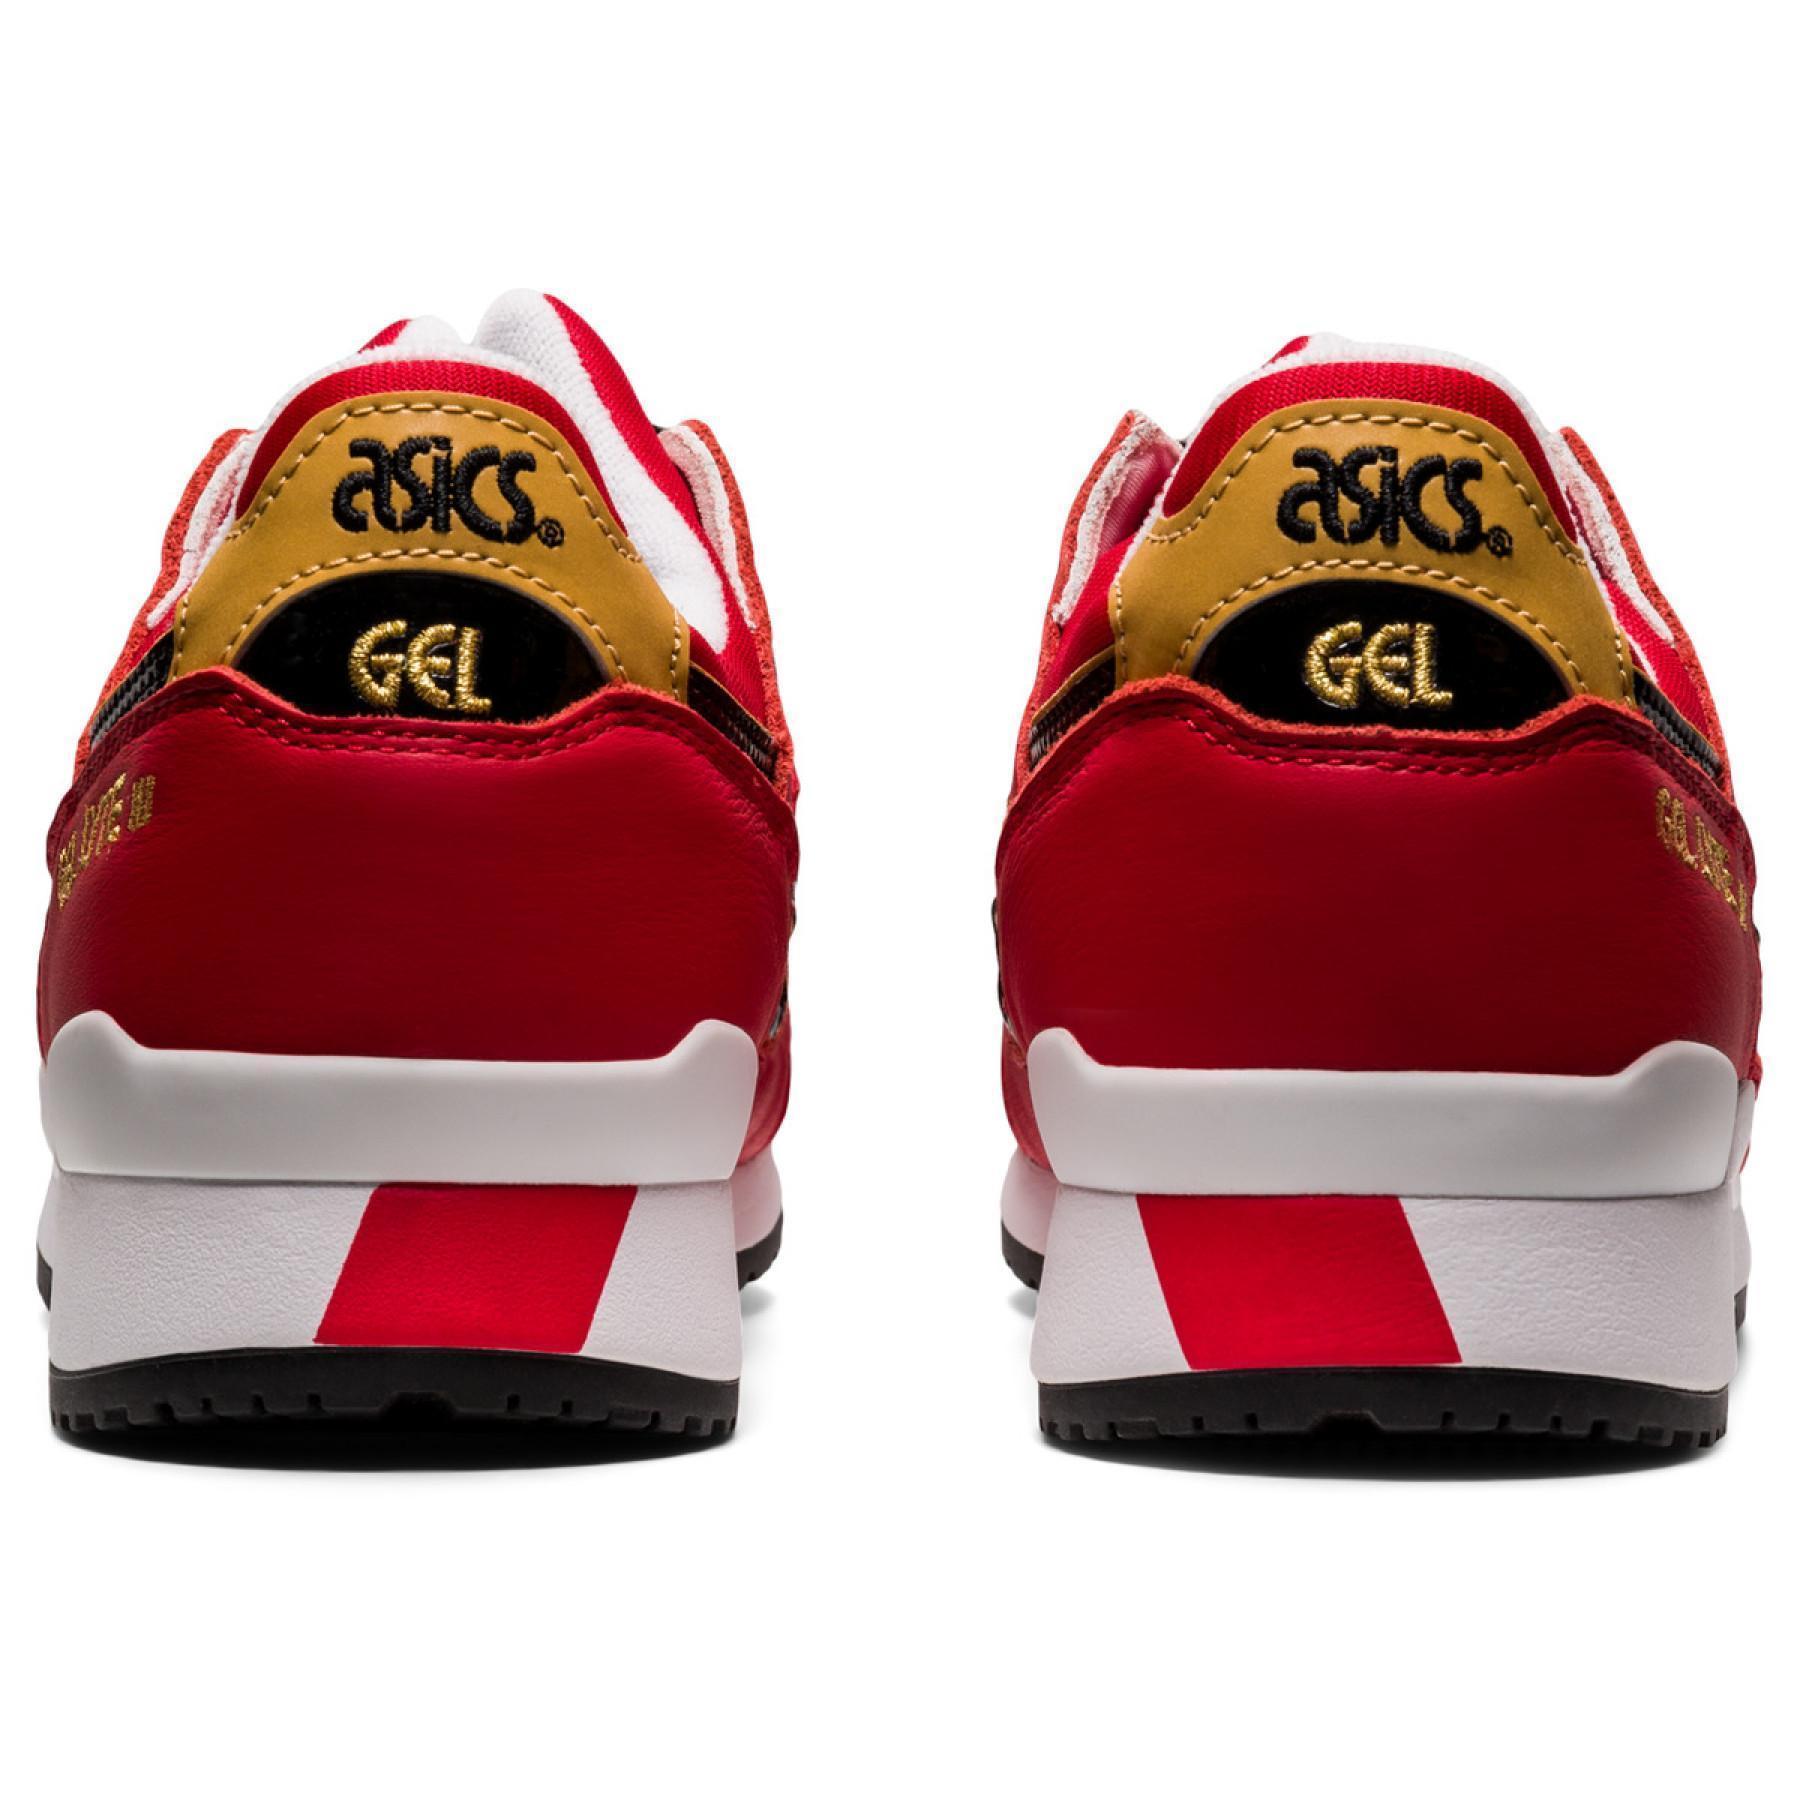 Sneakers Asics Gel-Lyte III OG